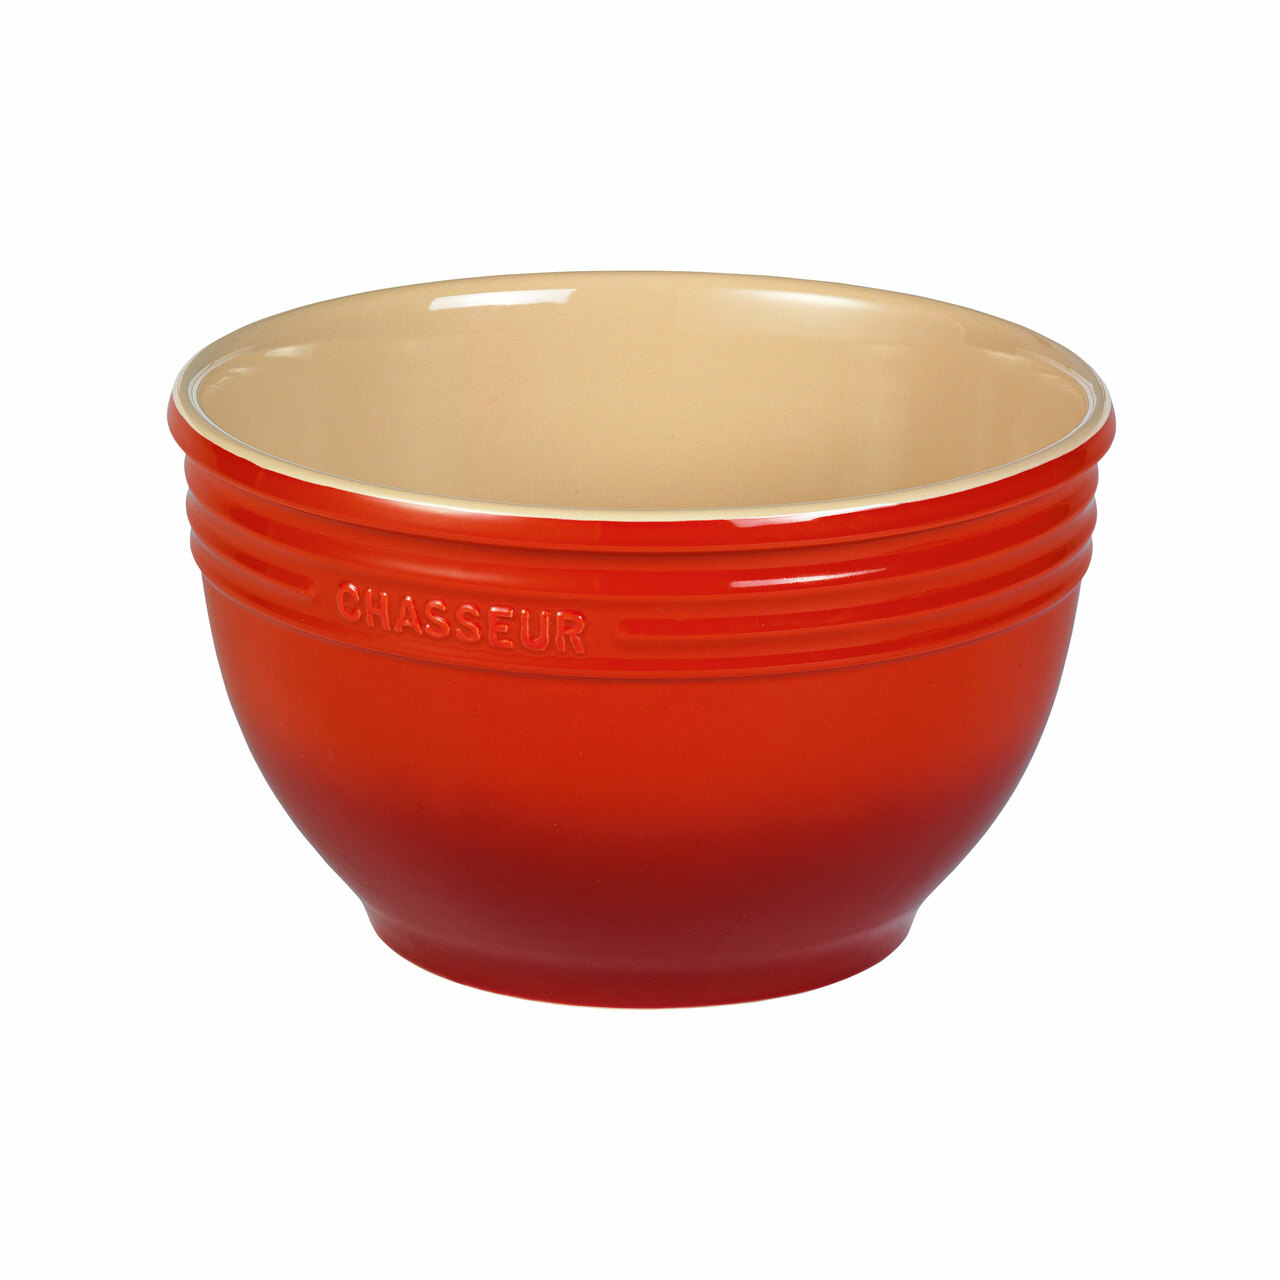 Medium Red Mixing Bowl